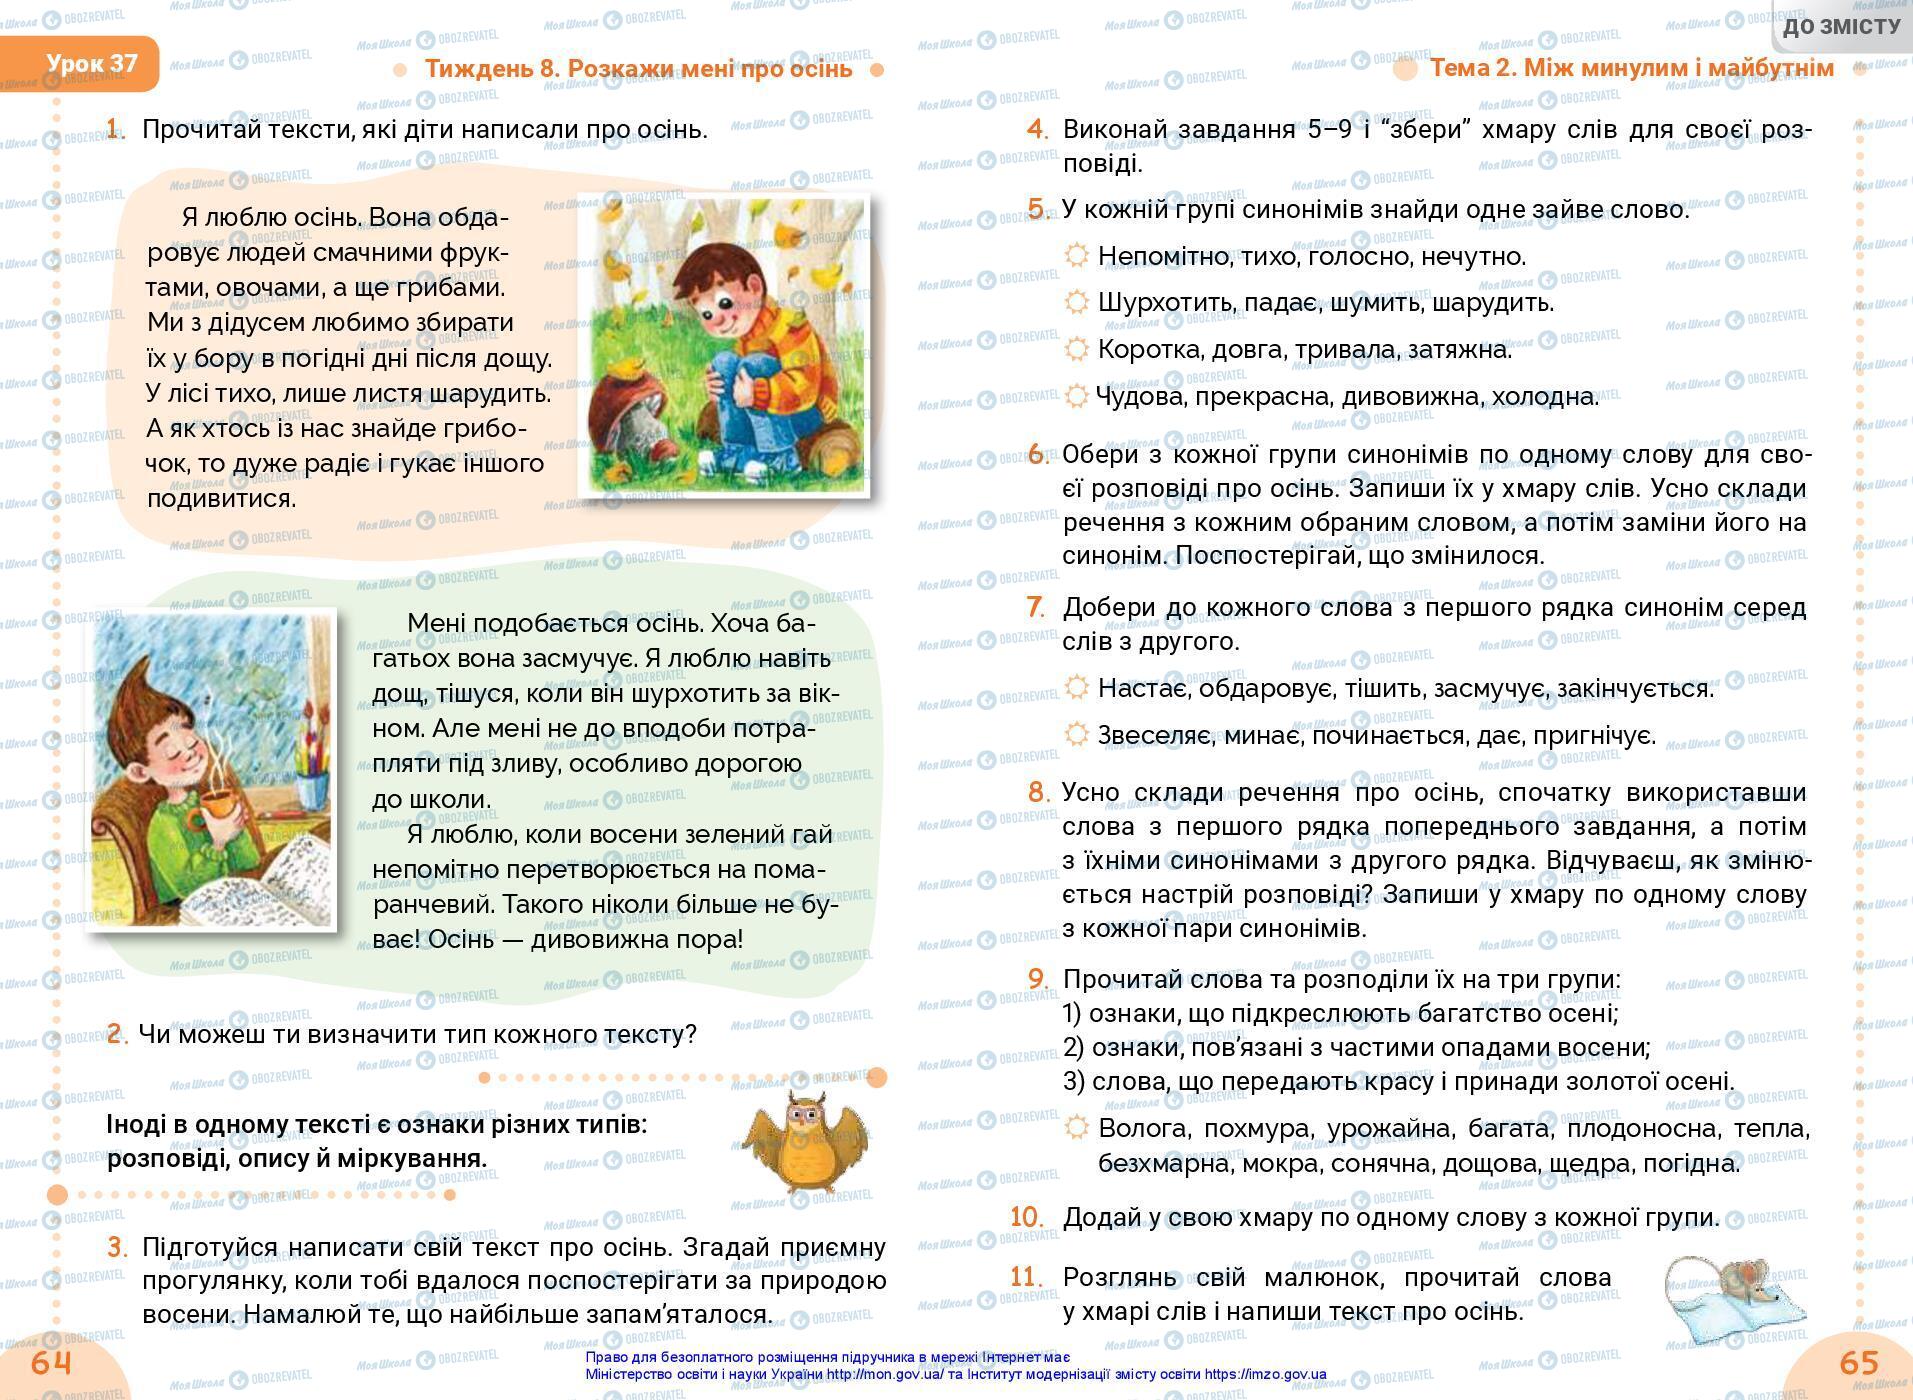 Підручники Українська мова 3 клас сторінка 64-65